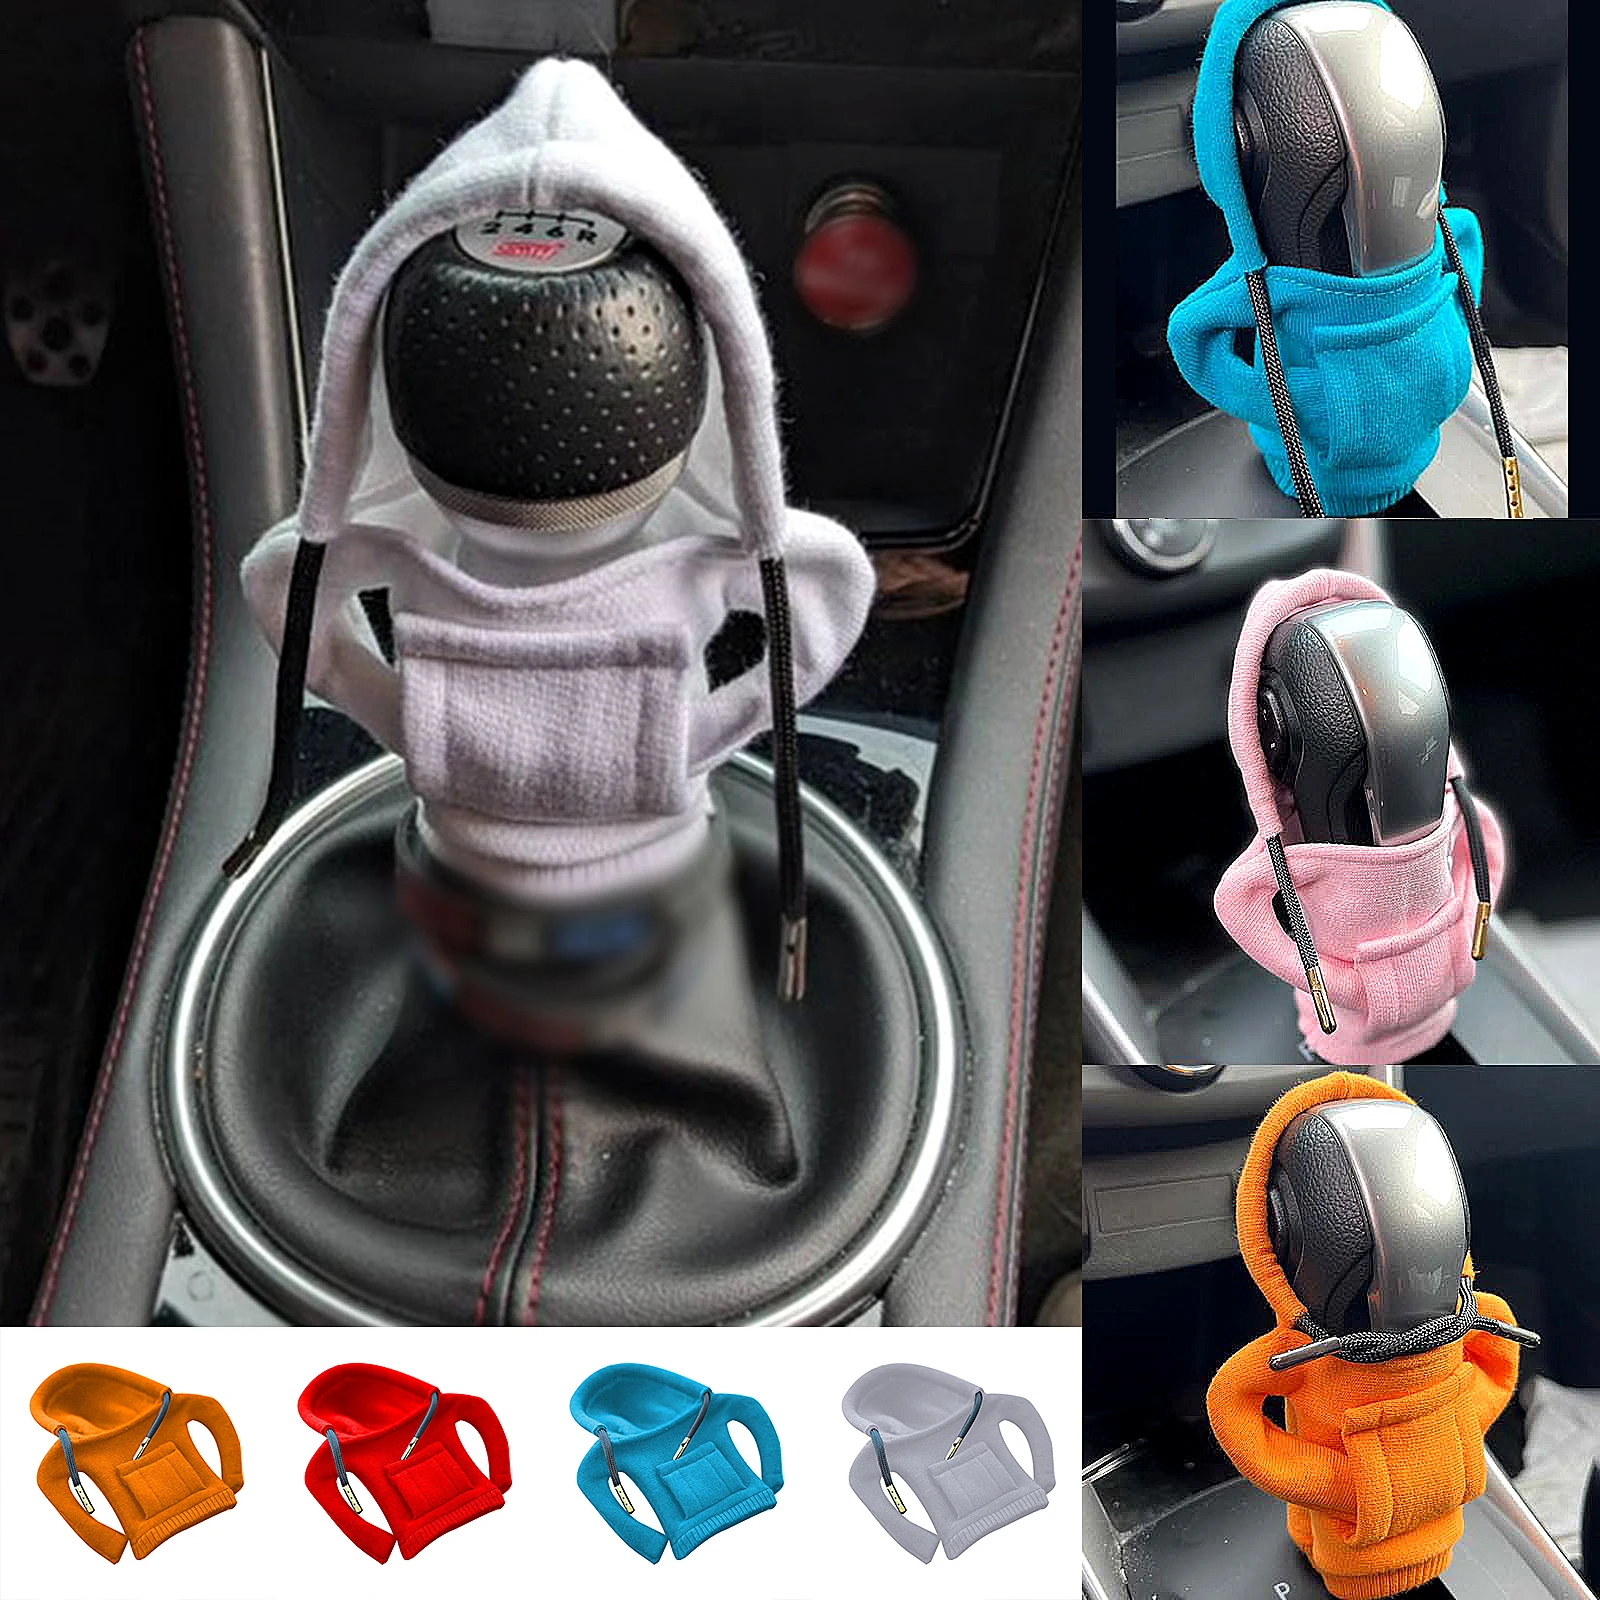 6 farben sind optional flauschige cartoon hoodie auto schalthebel mit kapuze  abdeckung schalthebel kleidung abdeckung auto ornamente auto geschenk